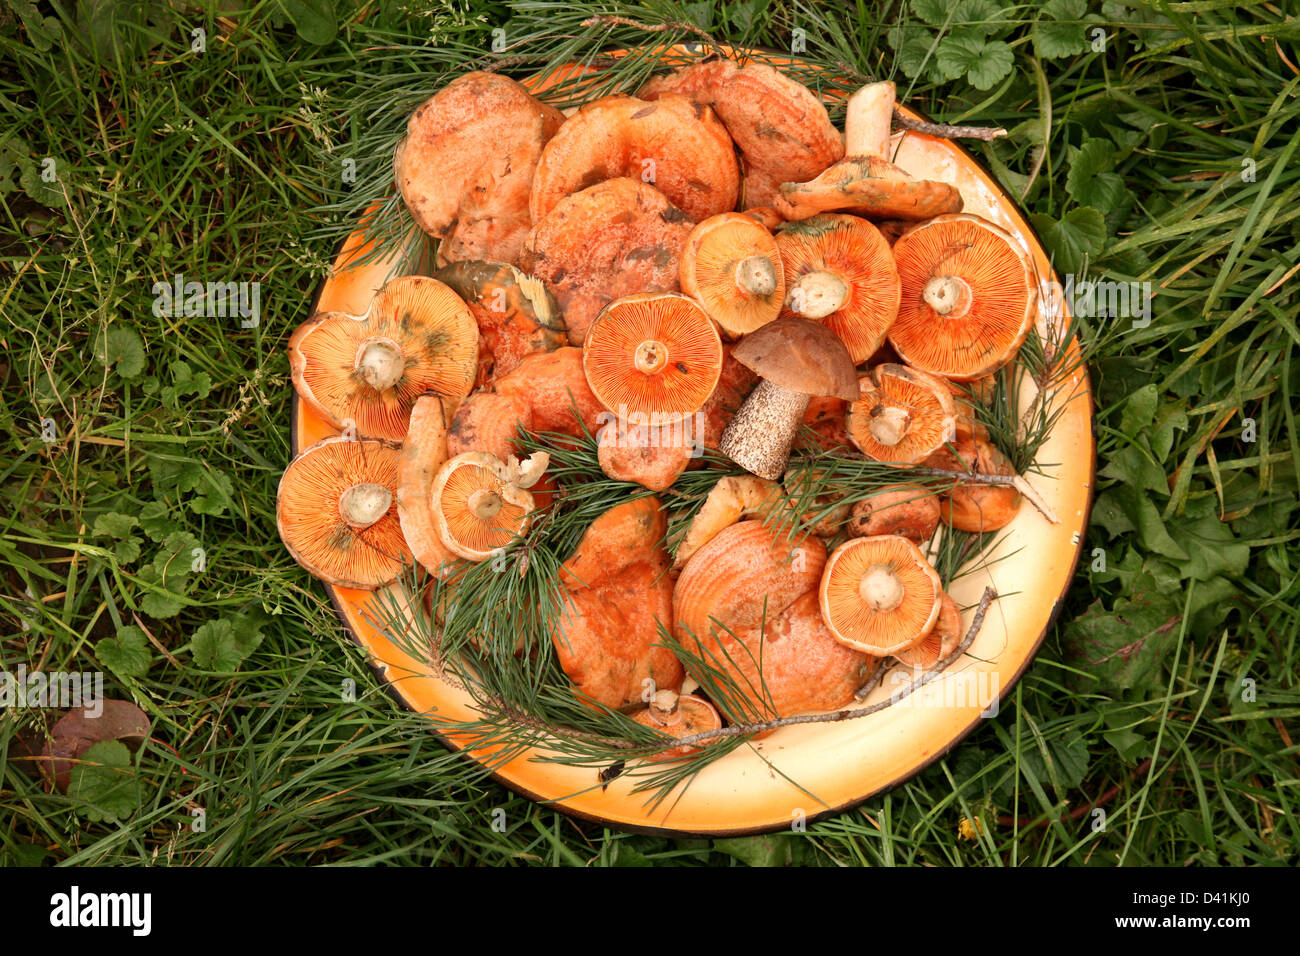 Le bac de champignons orange sur l'herbe Banque D'Images